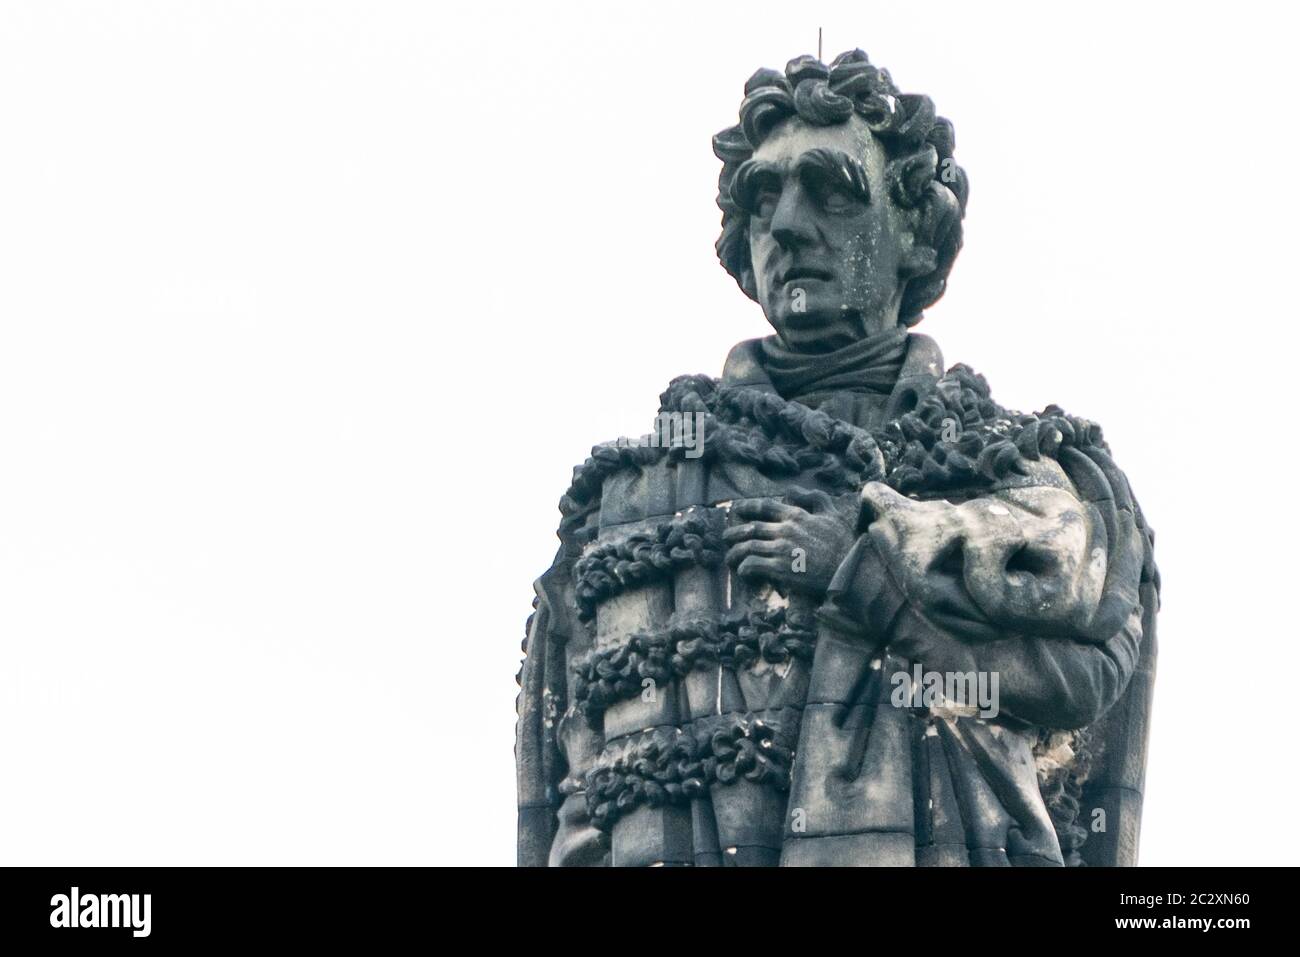 Die Statue von Henry Dundas, der erste Viscount Melville in St. Andrew Square Edinburgh, Schottland, Großbritannien Stockfoto